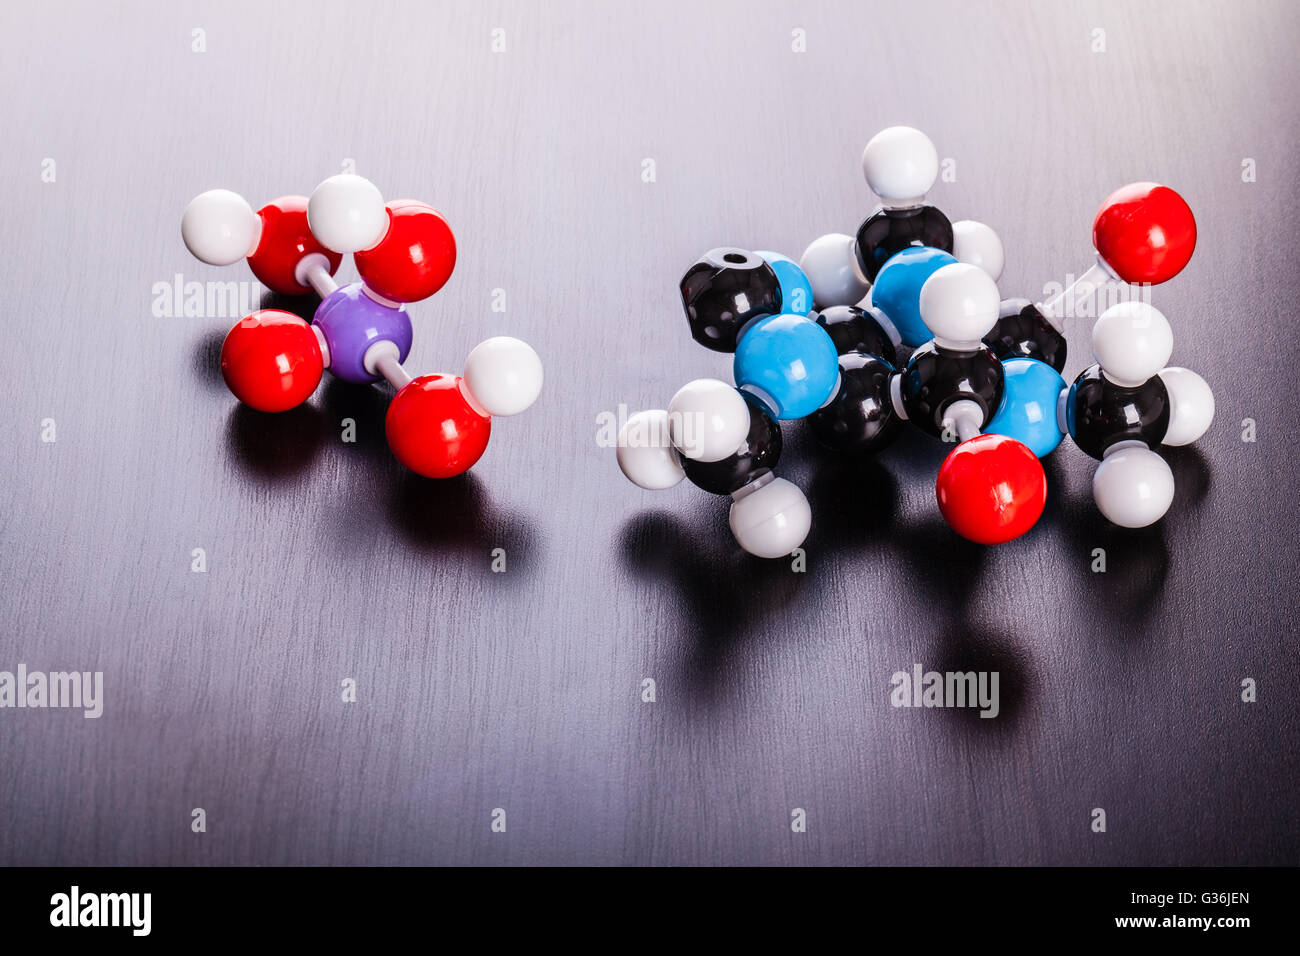 La caféine et l'acide phosphorique modèle de structure moléculaire chimique sur une surface en bois Banque D'Images